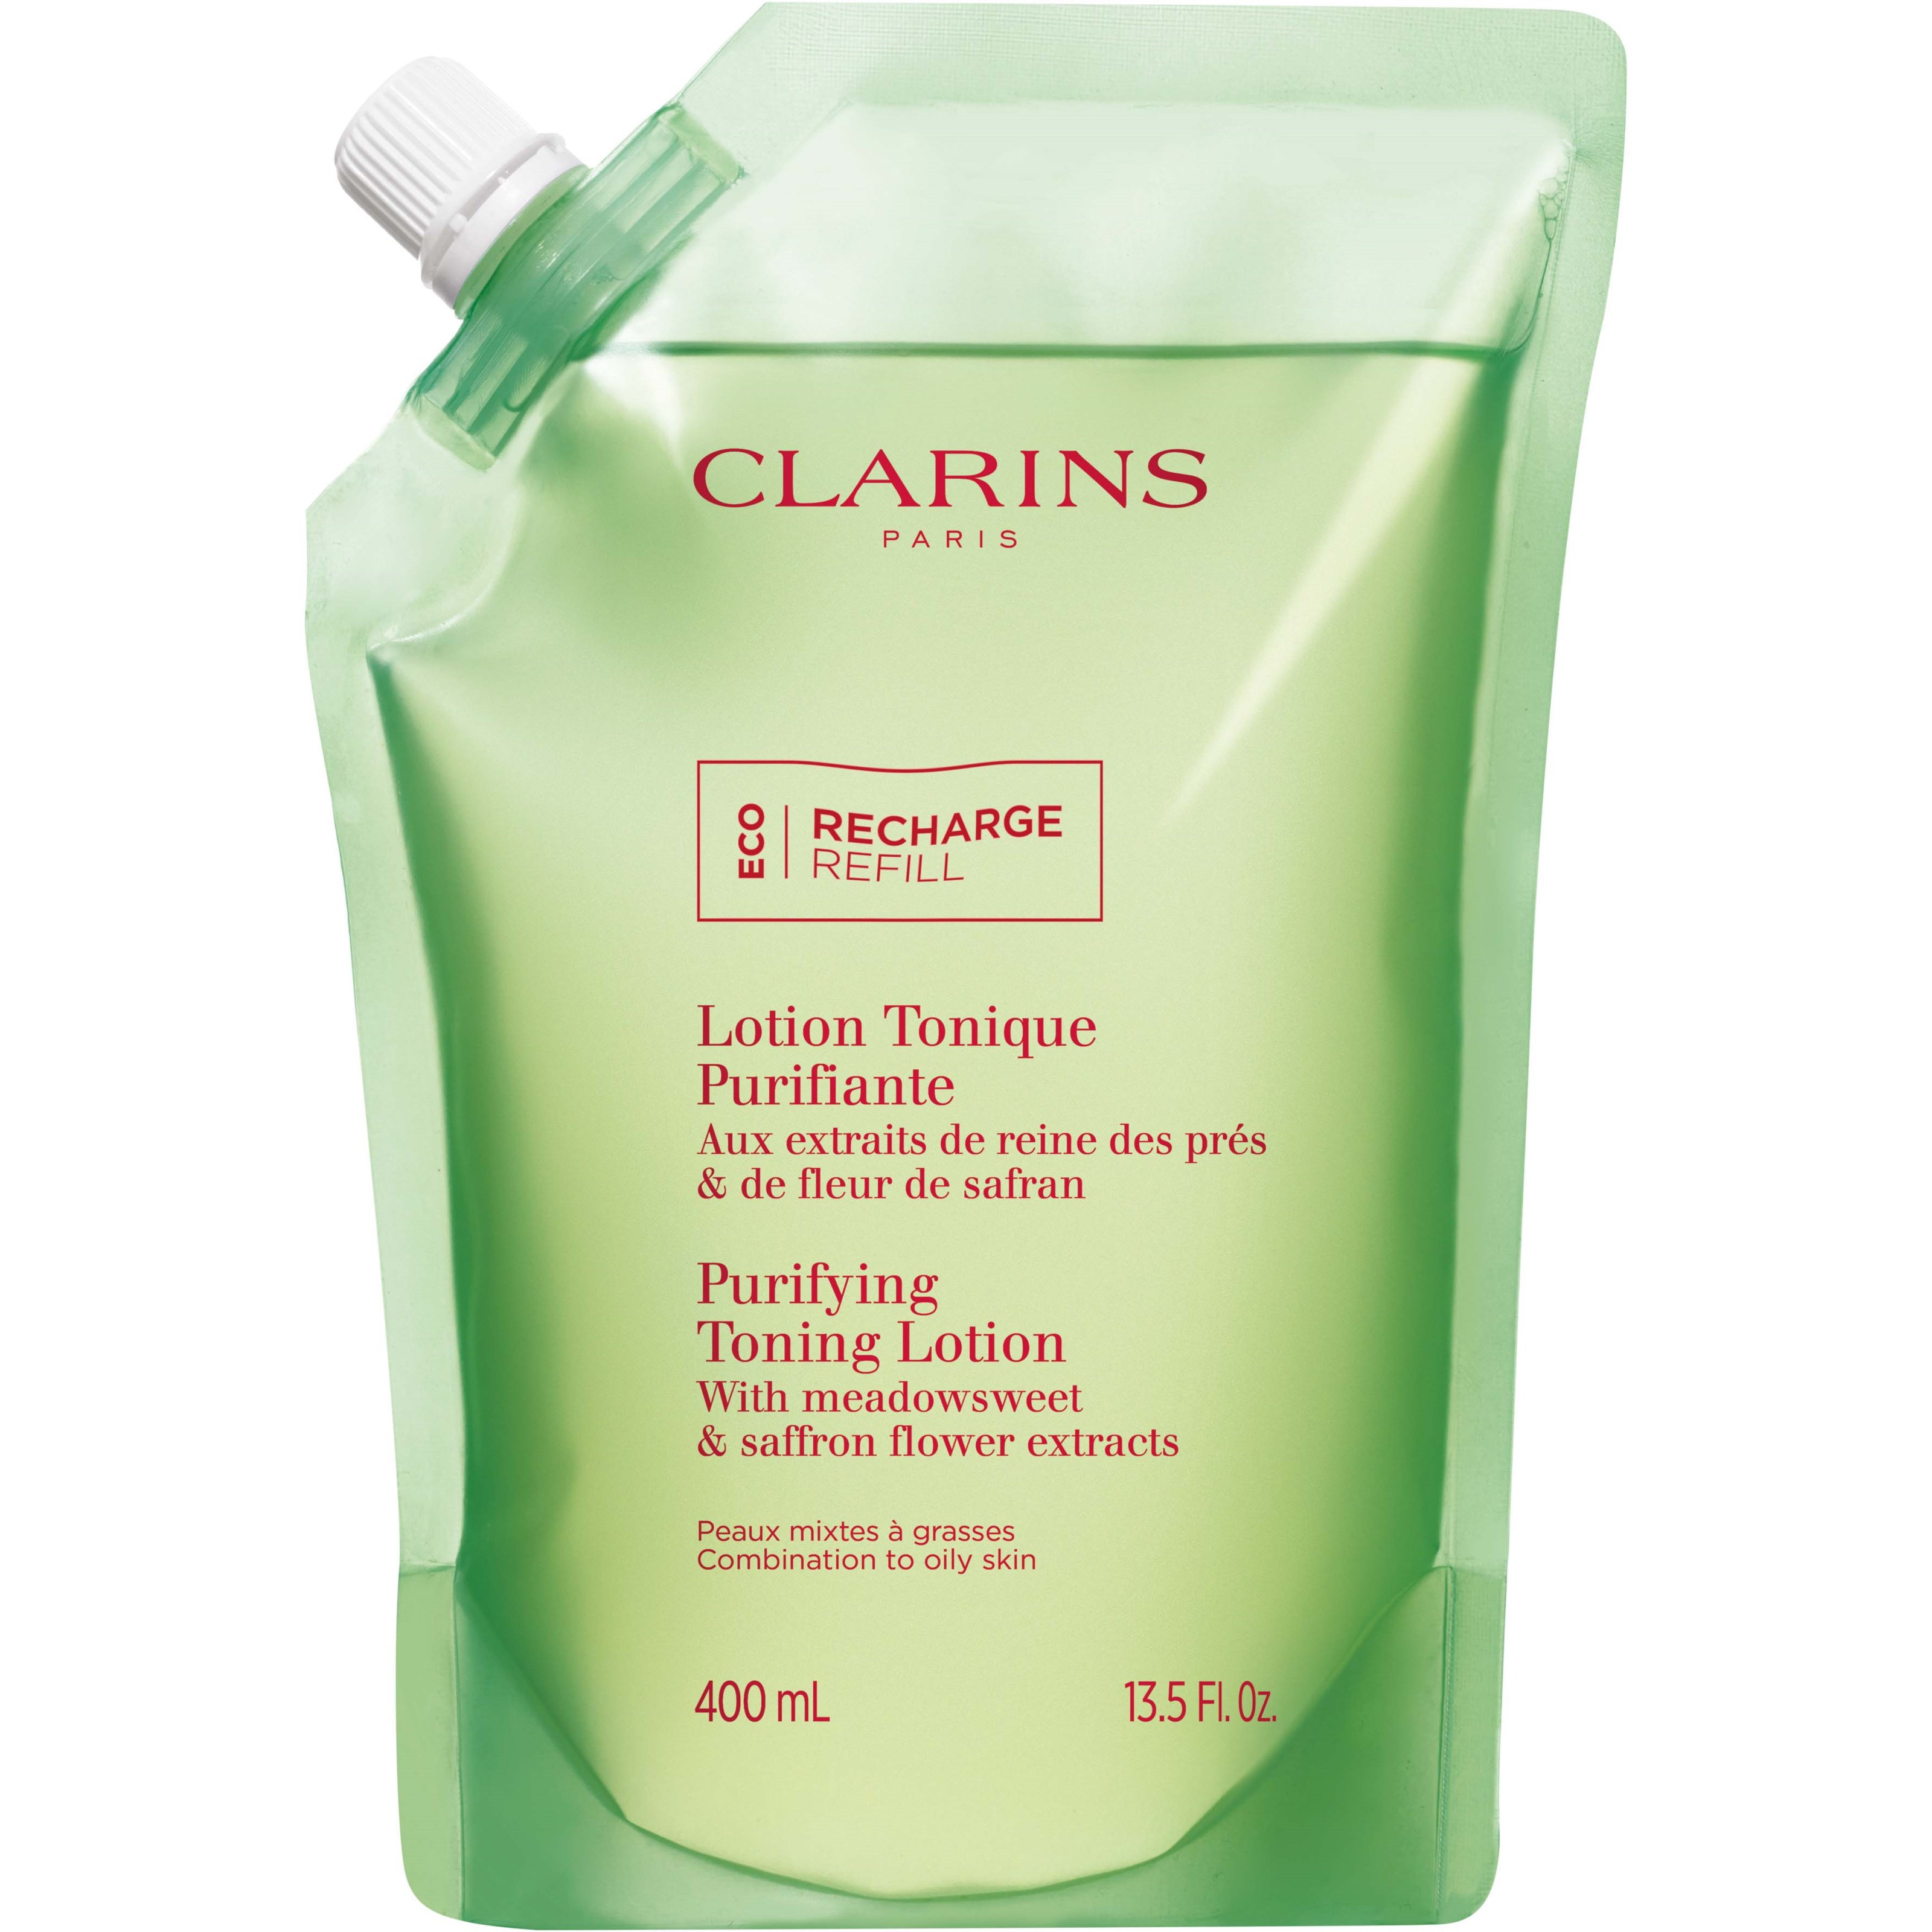 Zdjęcia - Produkt do mycia twarzy i ciała Clarins Purifying Toning Lotion Combination to Oily Skin Refill 4 